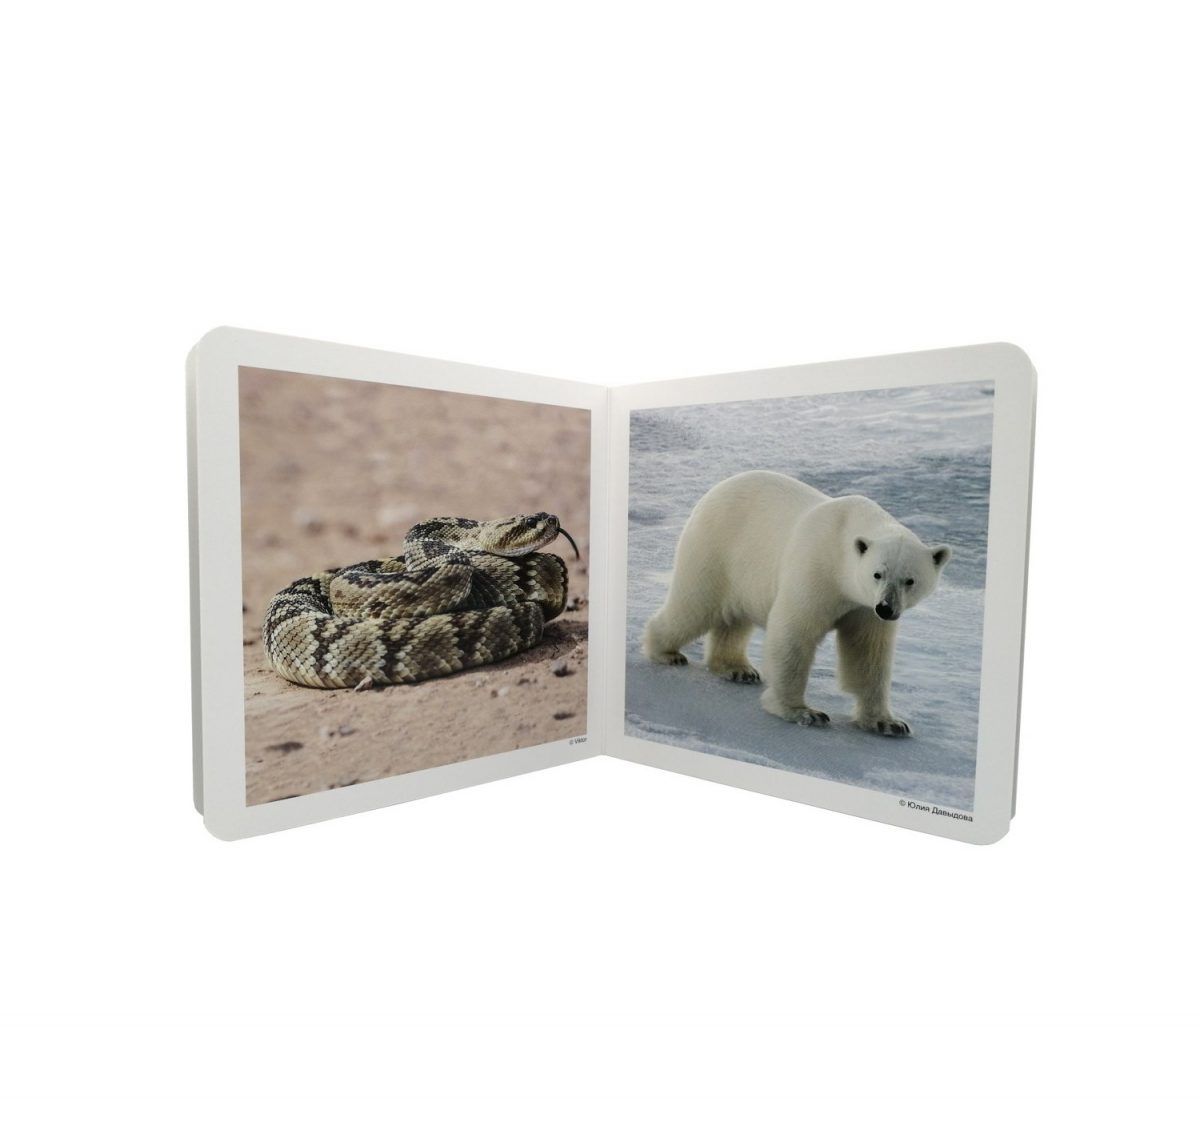 Libro de fotografías de animales Salvajes. Diez fotografías individuales de: lobo (portada), panda, orangután, jabalí, águila, serpiente, oso polar, coala, canguro, cabra montés y tortuga.